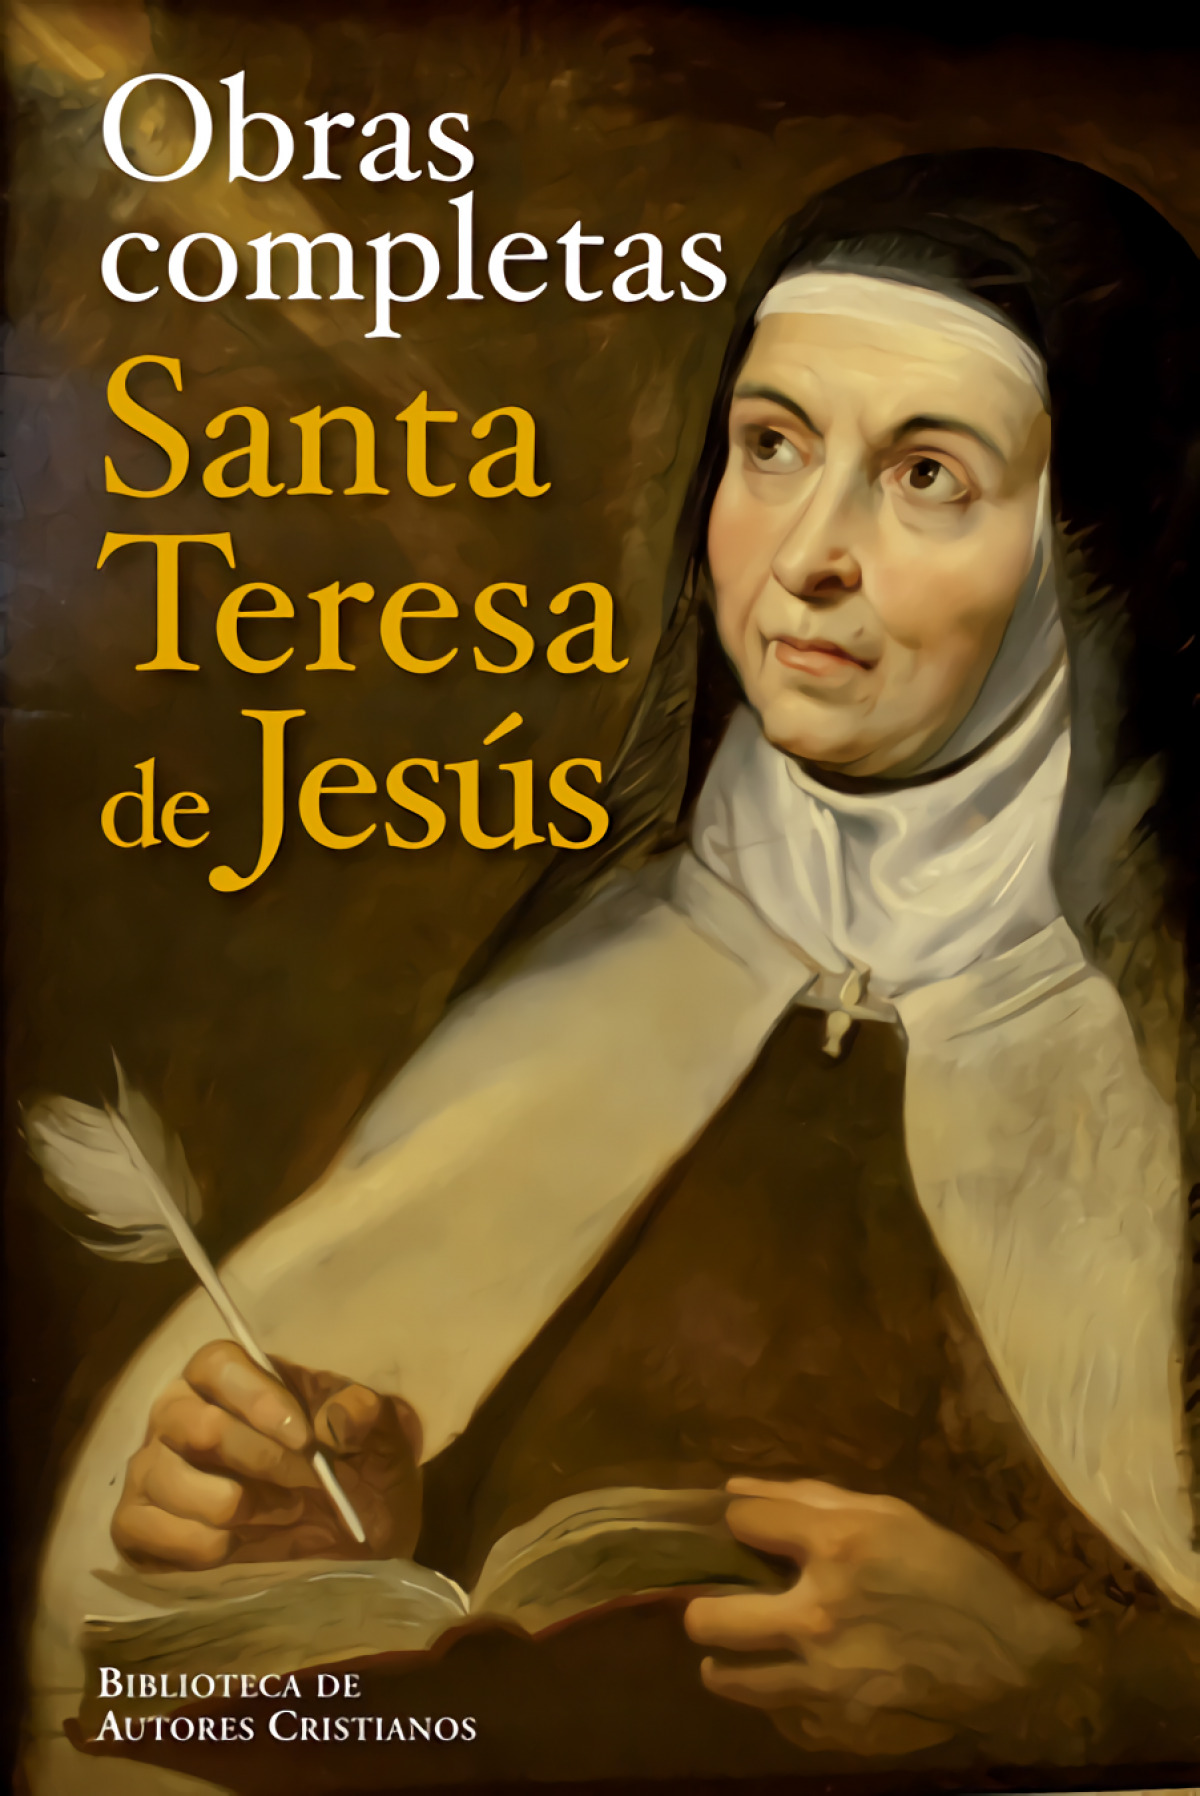 Obras completas Santa Teresa de Jesús - De Jesus, Santa Teresa